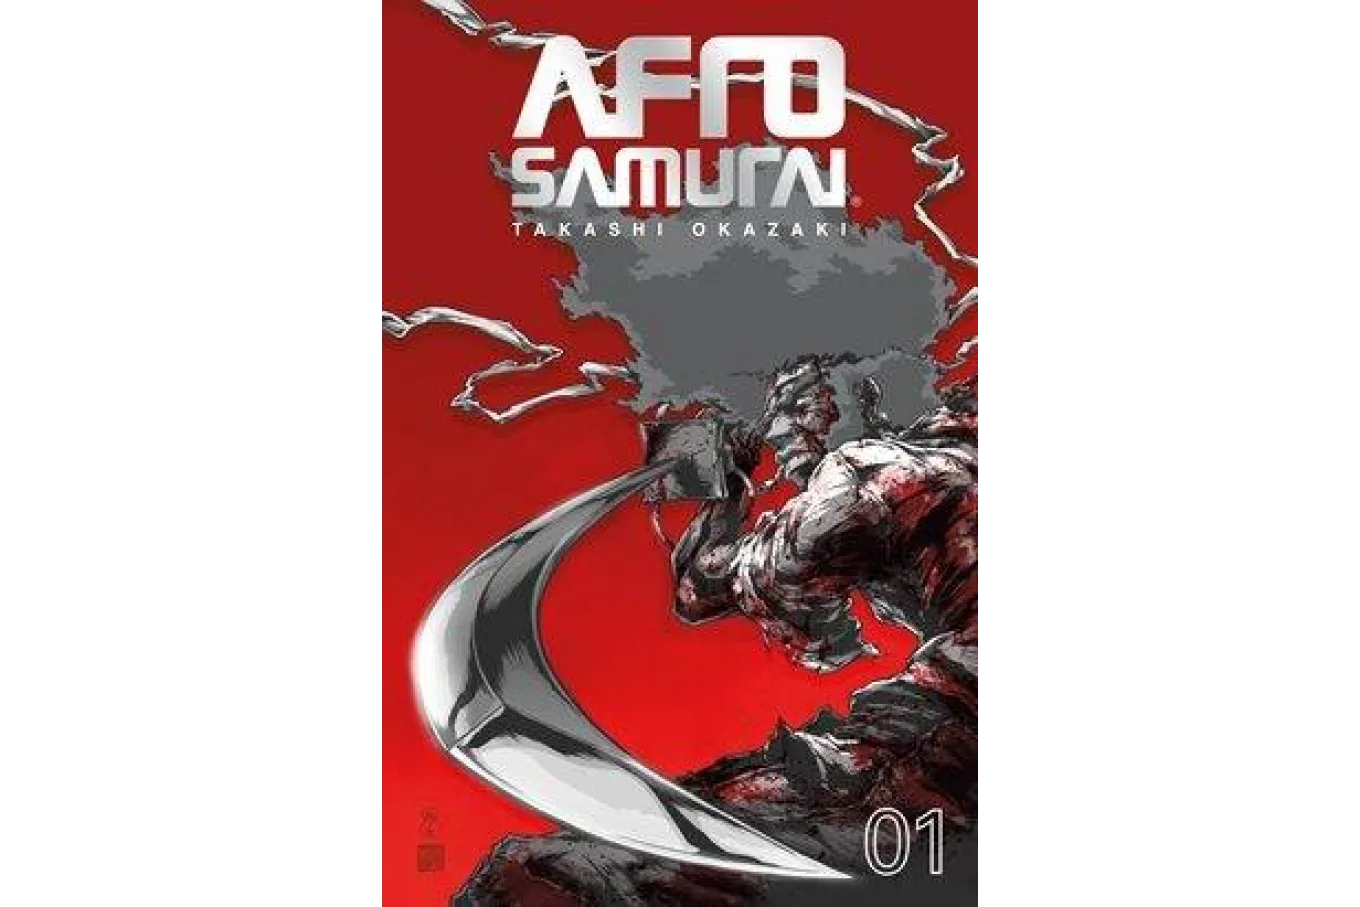 Afro Samurai book cover